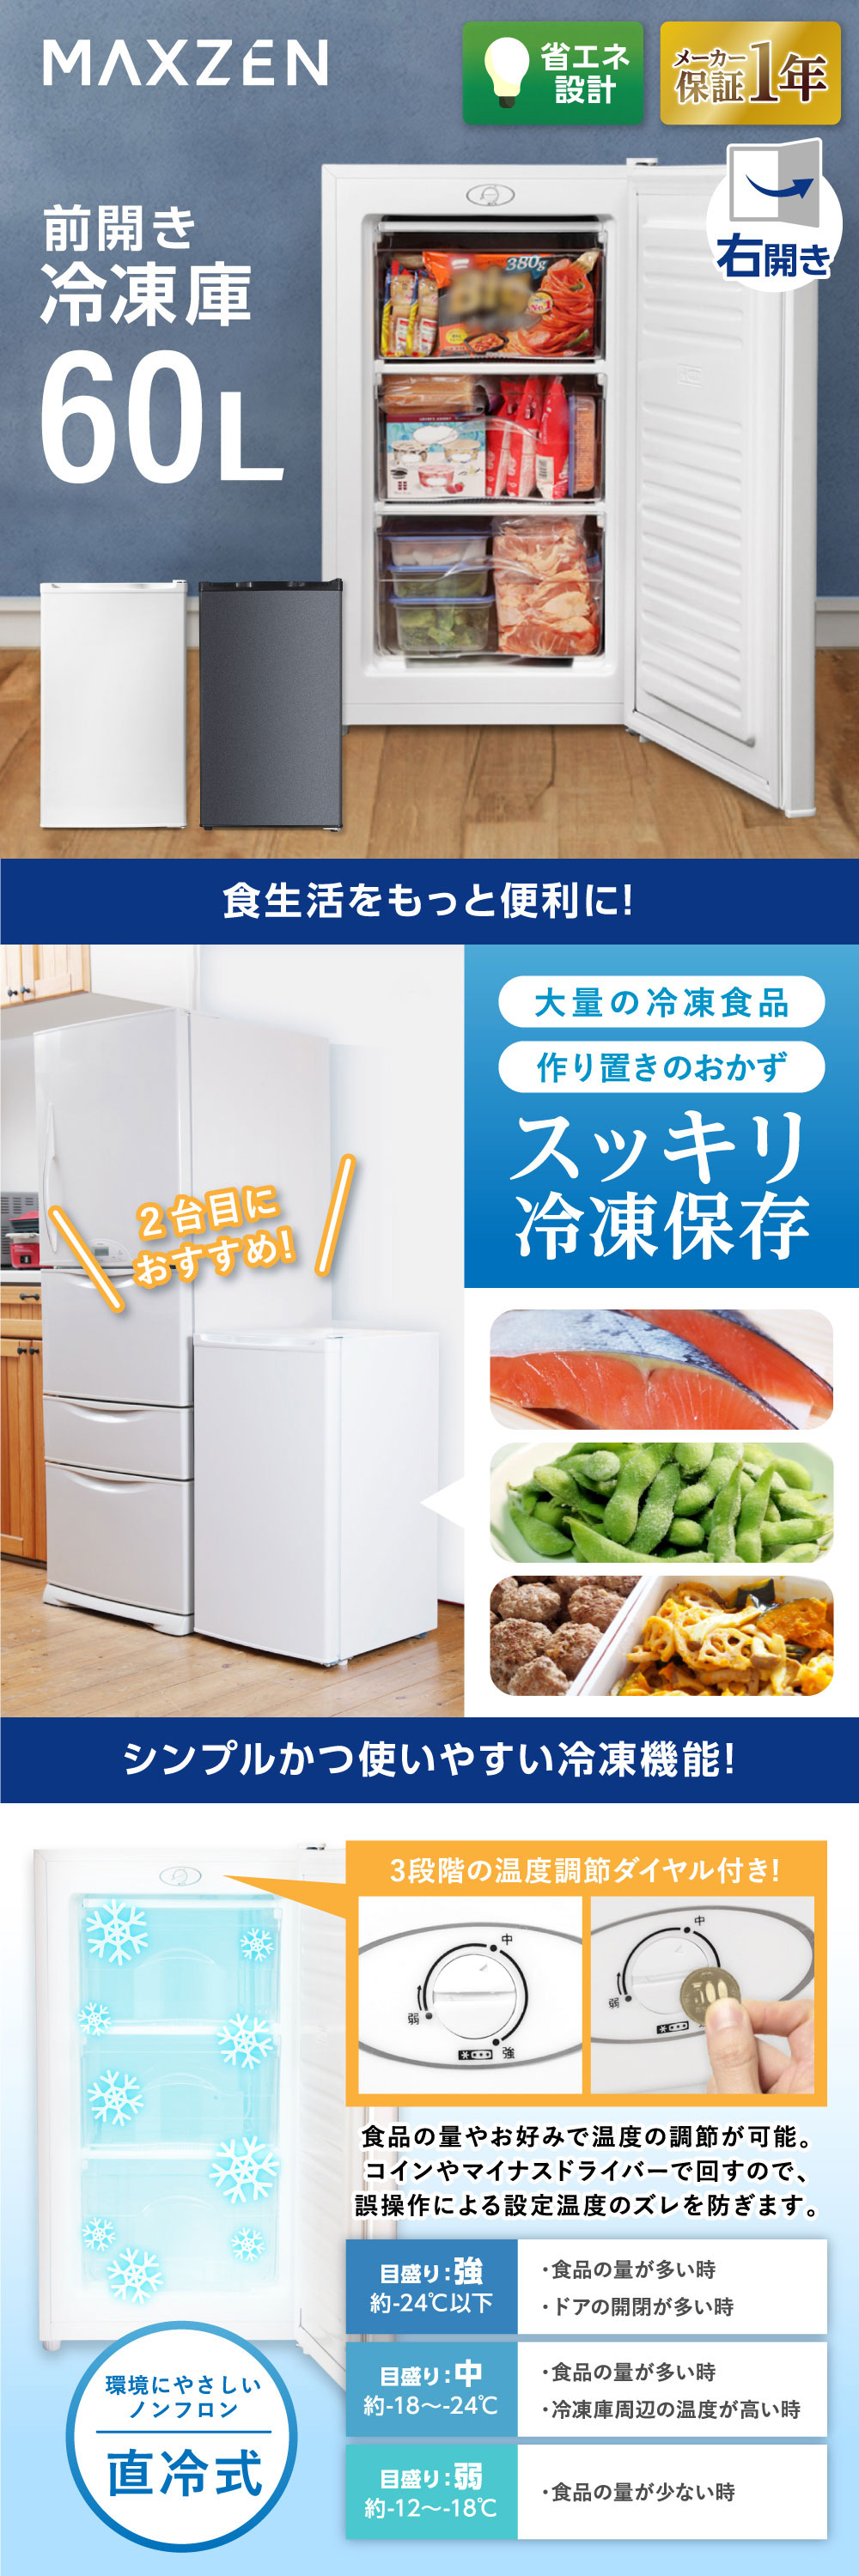 冷凍庫 家庭用 小型 60L 右開き ノンフロン チェストフリーザー コンパクト フリーザー 冷凍 キッチン家電 ホワイト MAXZEN  JF060HM01WH マクスゼン